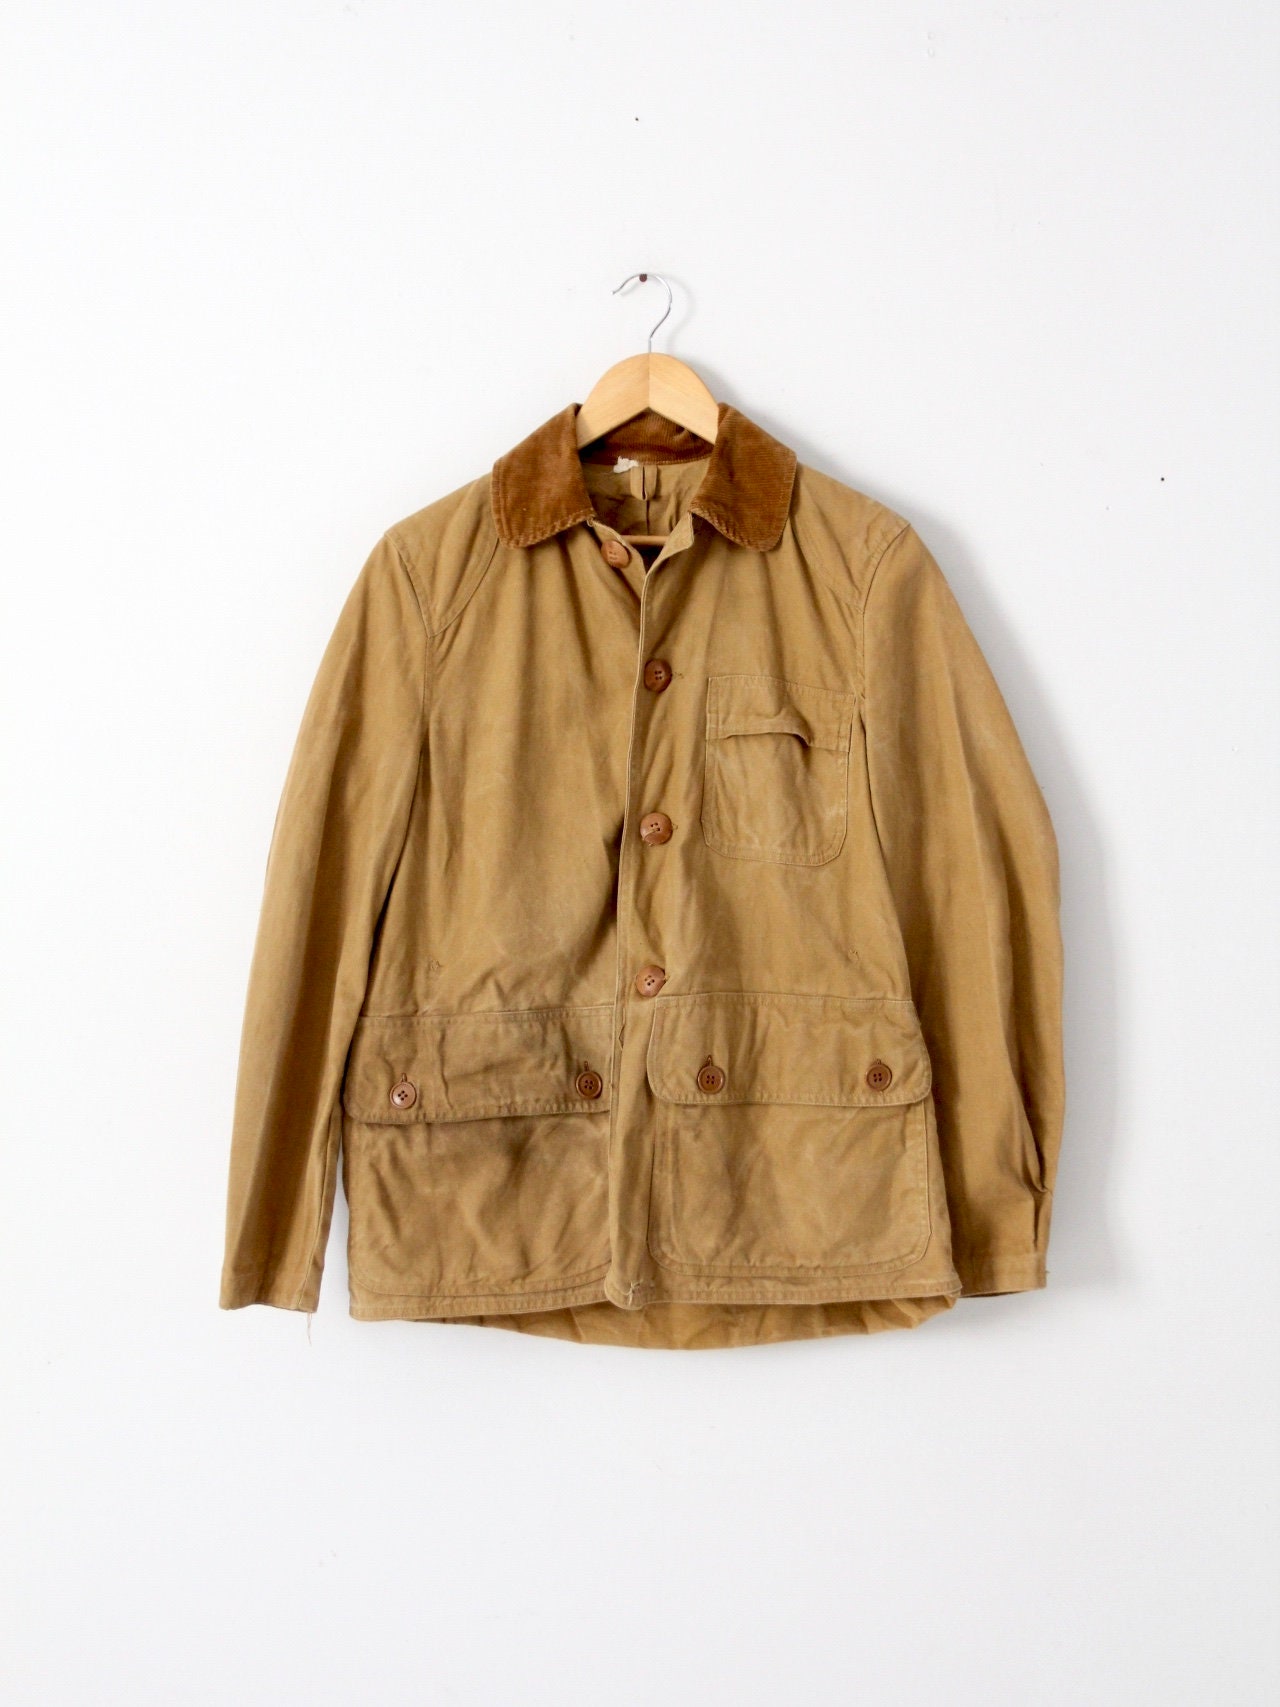 Vintage Hettrick Mfg Co American Field Jacket -  Hong Kong